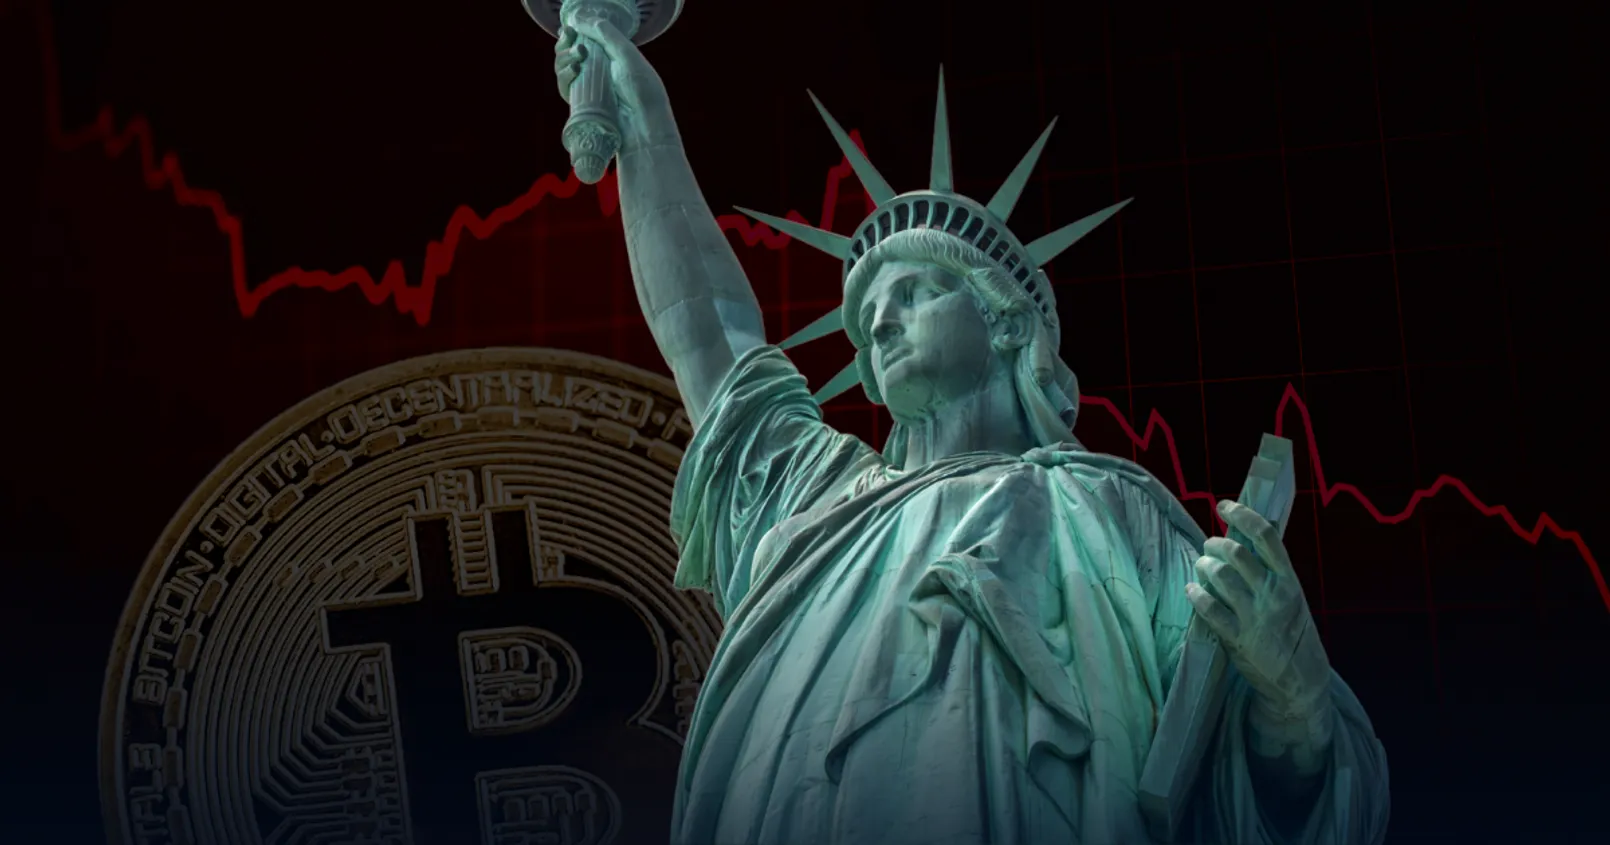 ปริมาณ 'Bitcoin สำรอง' เว็บเทรดสหรัฐฯ หลุดระดับ 50% - สะท้อนตลาดสั่นคลอนหนัก รับวิกฤต SEC